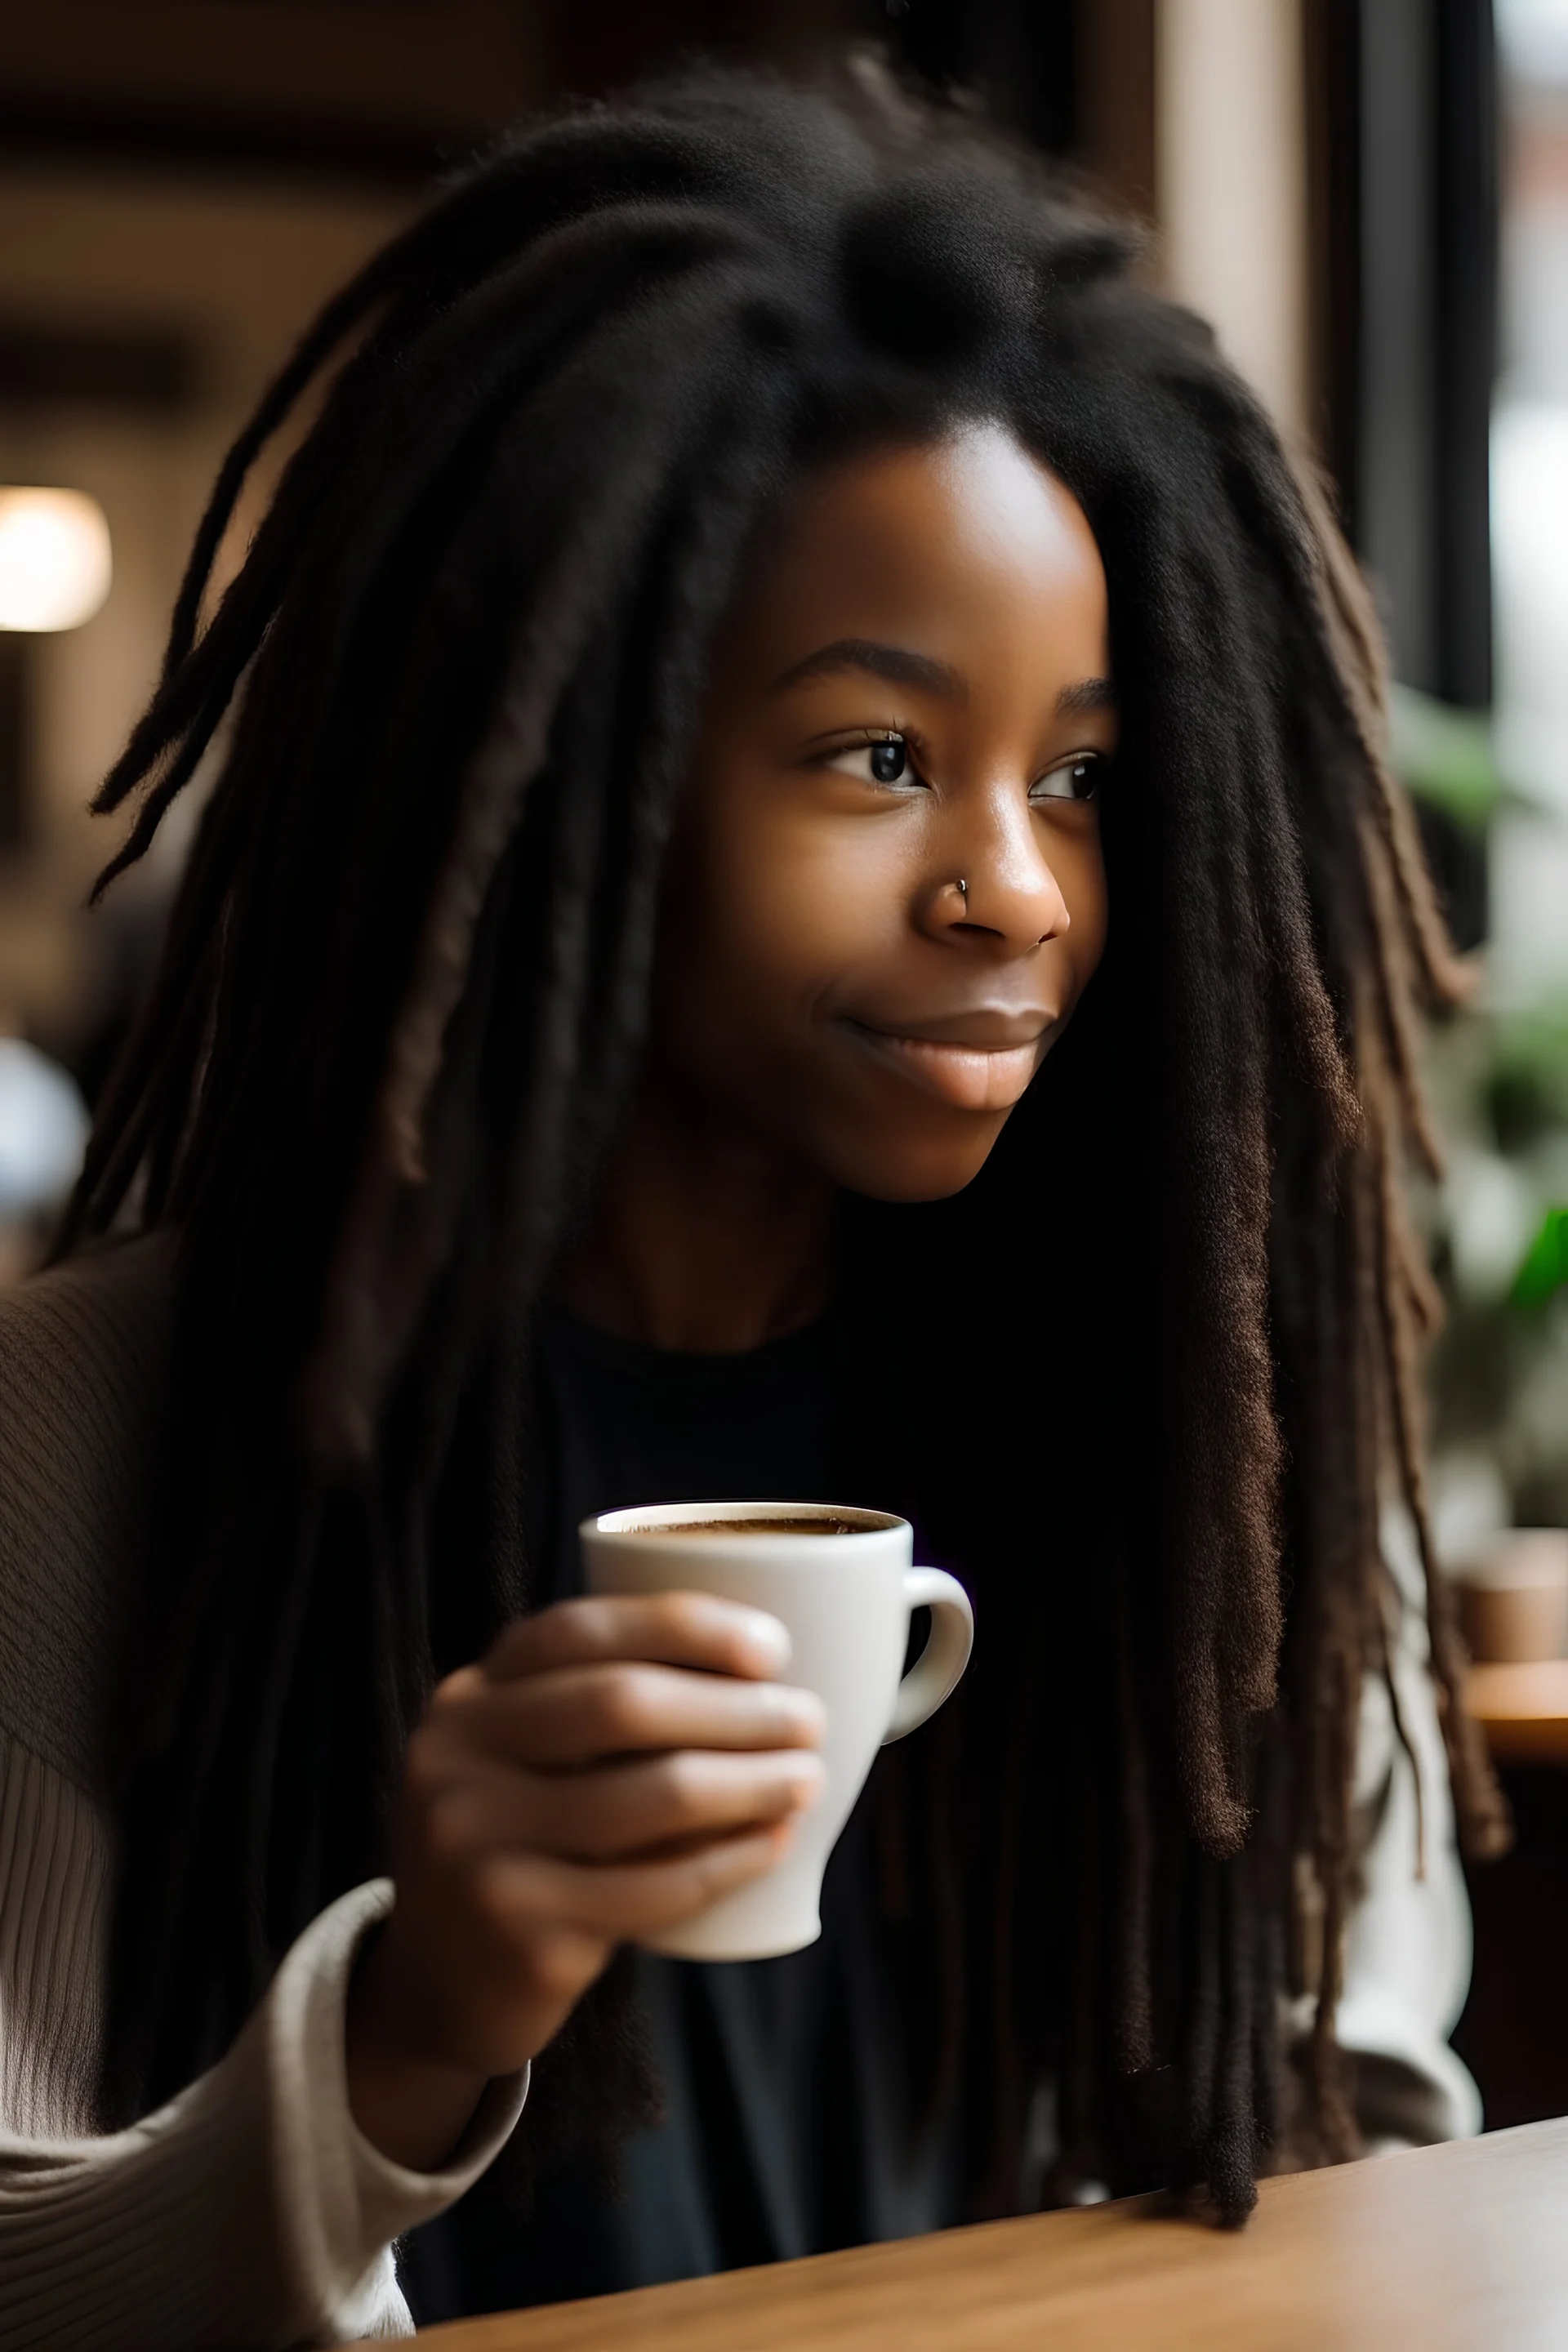 Wanita berambut panjang hitam berusia 23 tahun sedang minum kopi